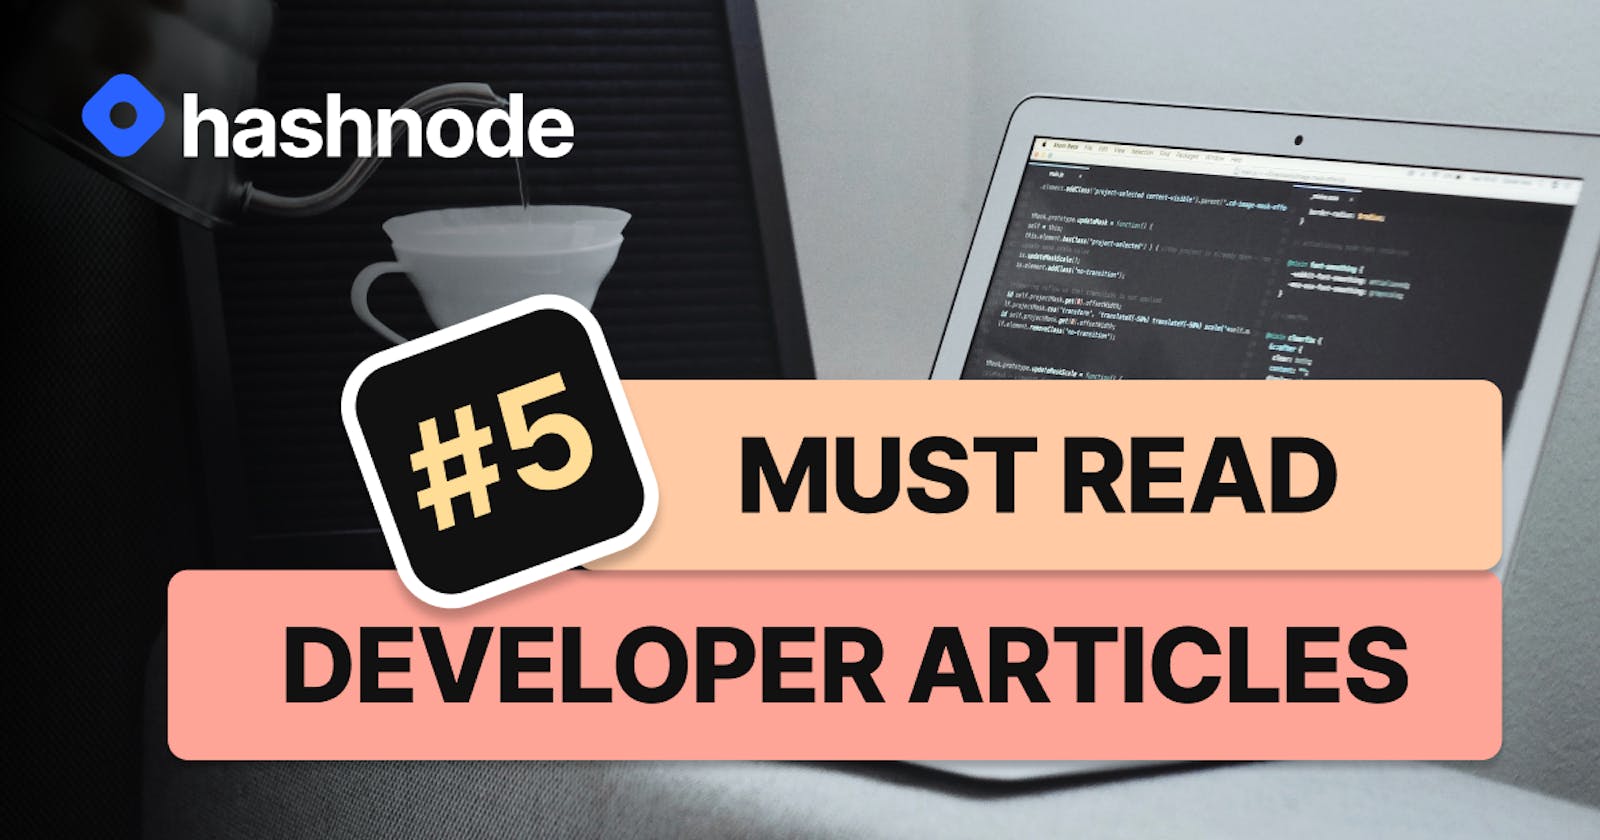 Must Read Developer Articles on Hashnode - #5